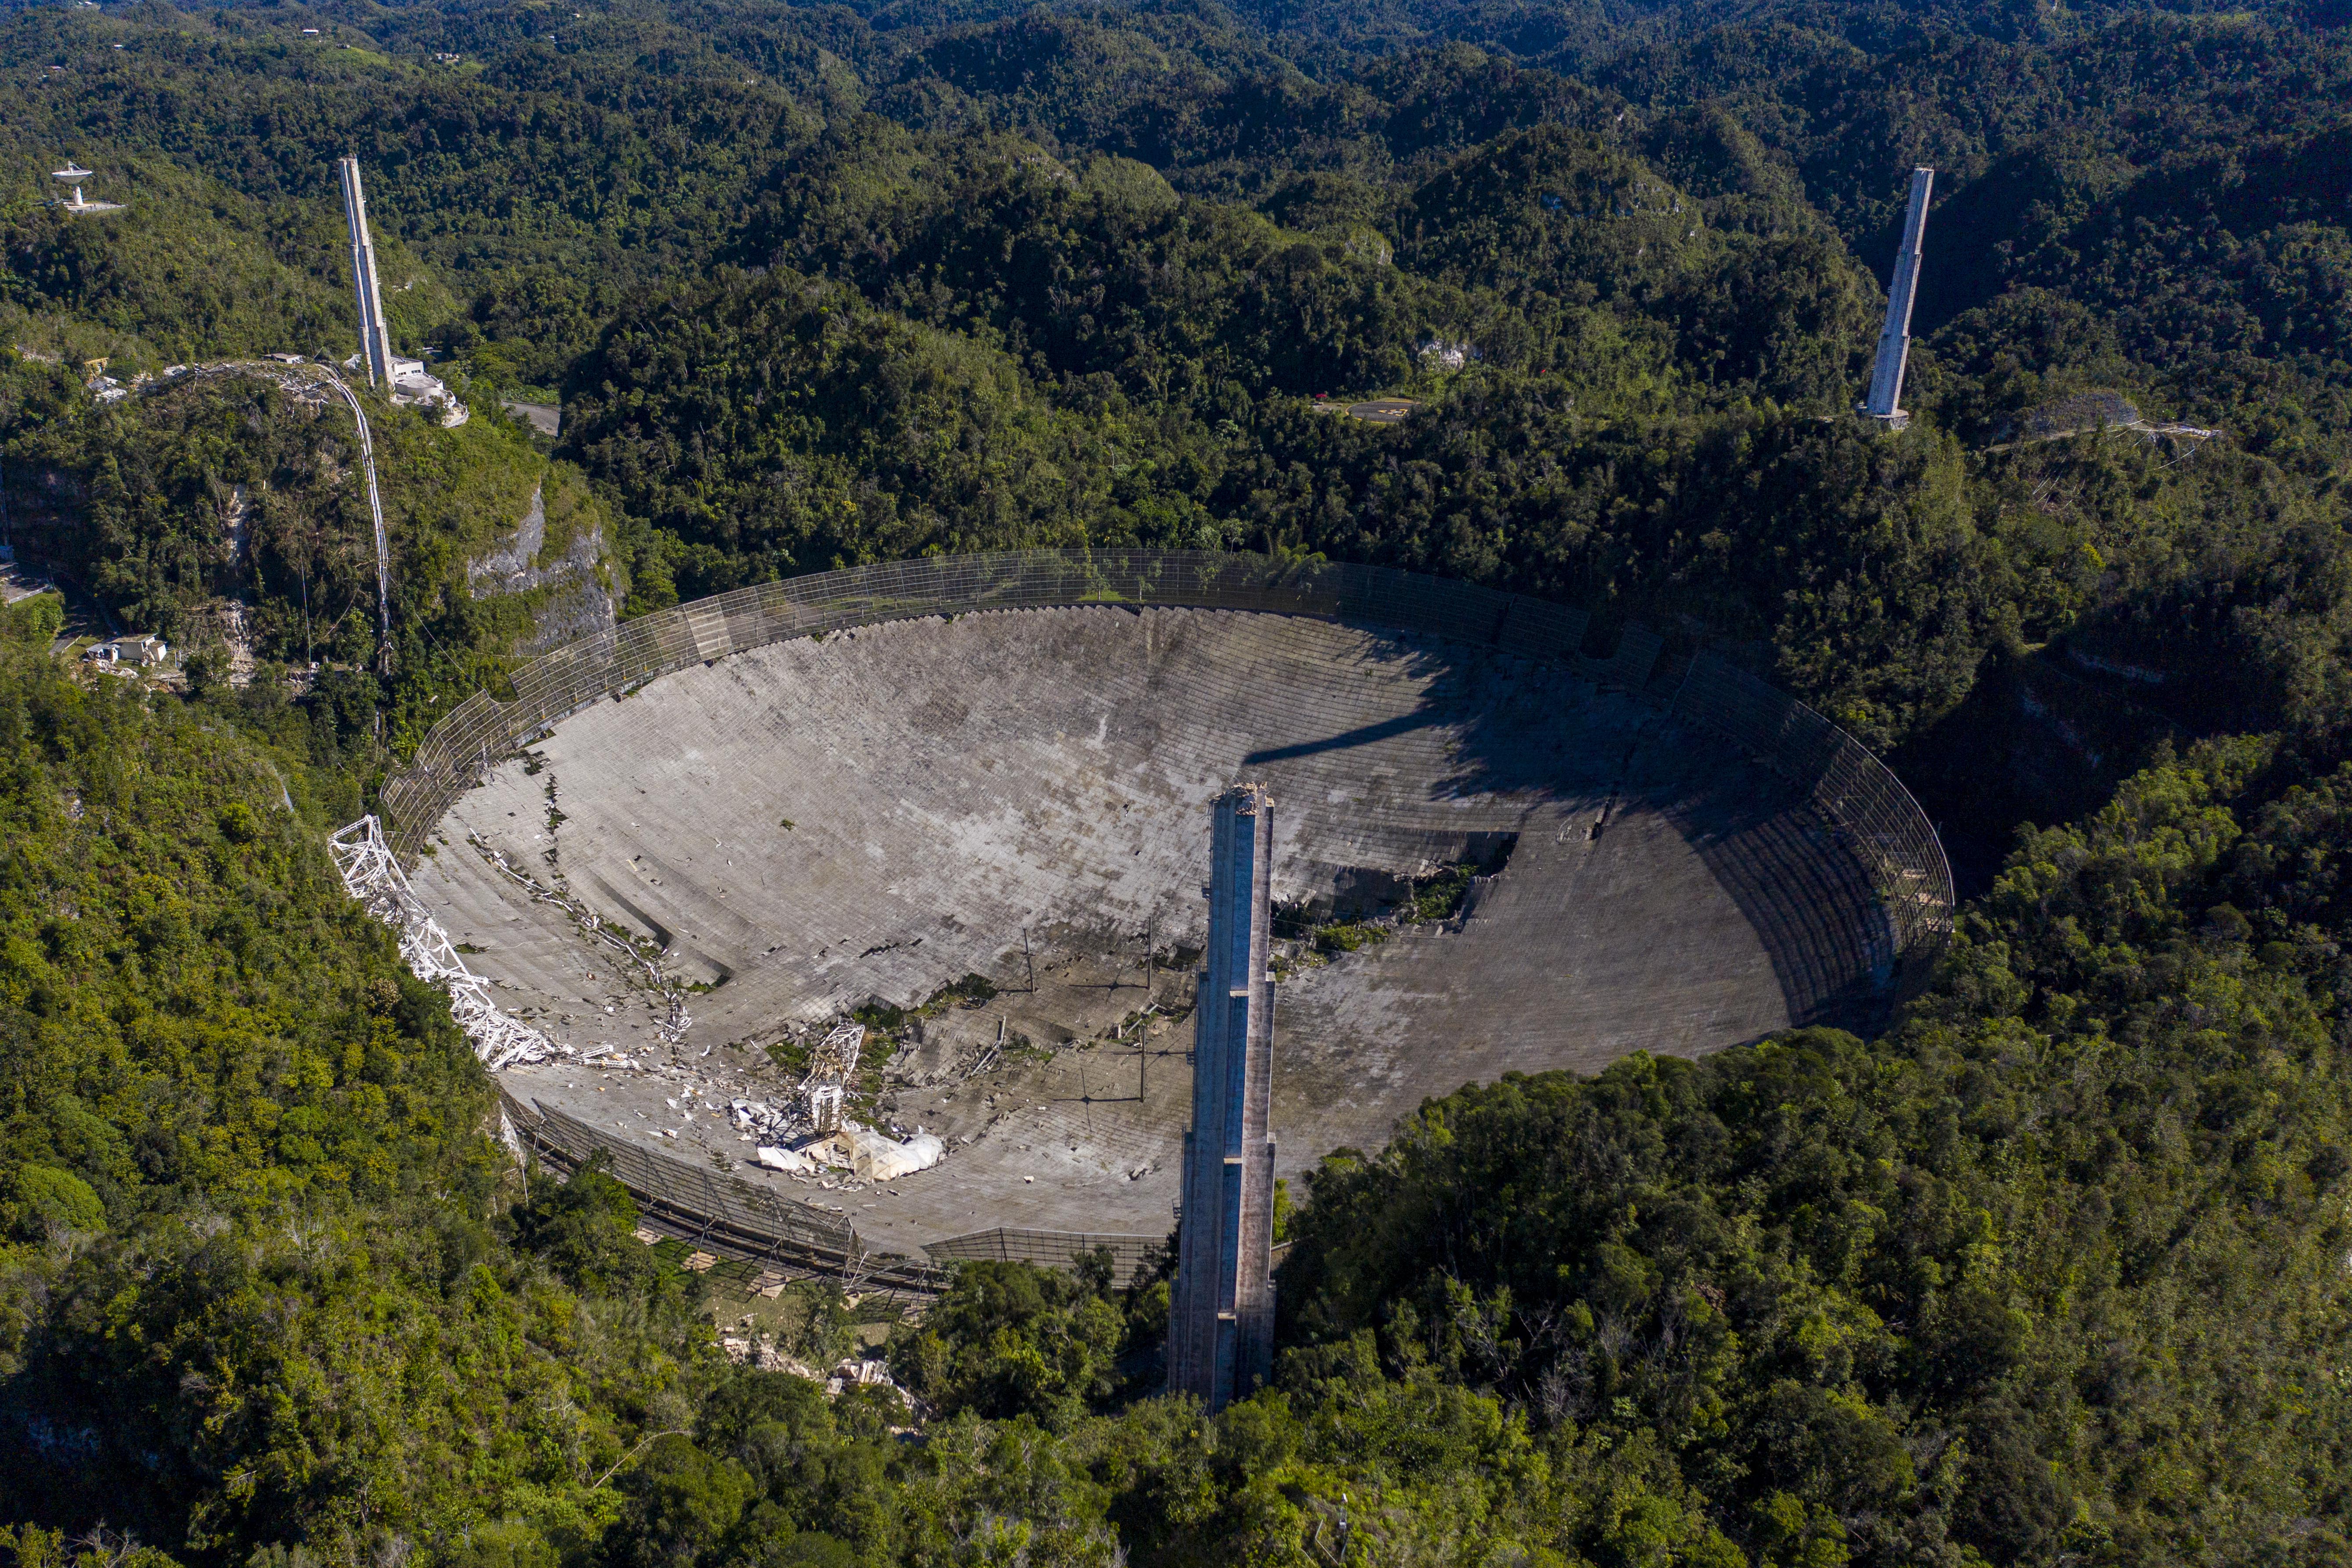 radiotelescopio de Arecibo en Puerto Rico